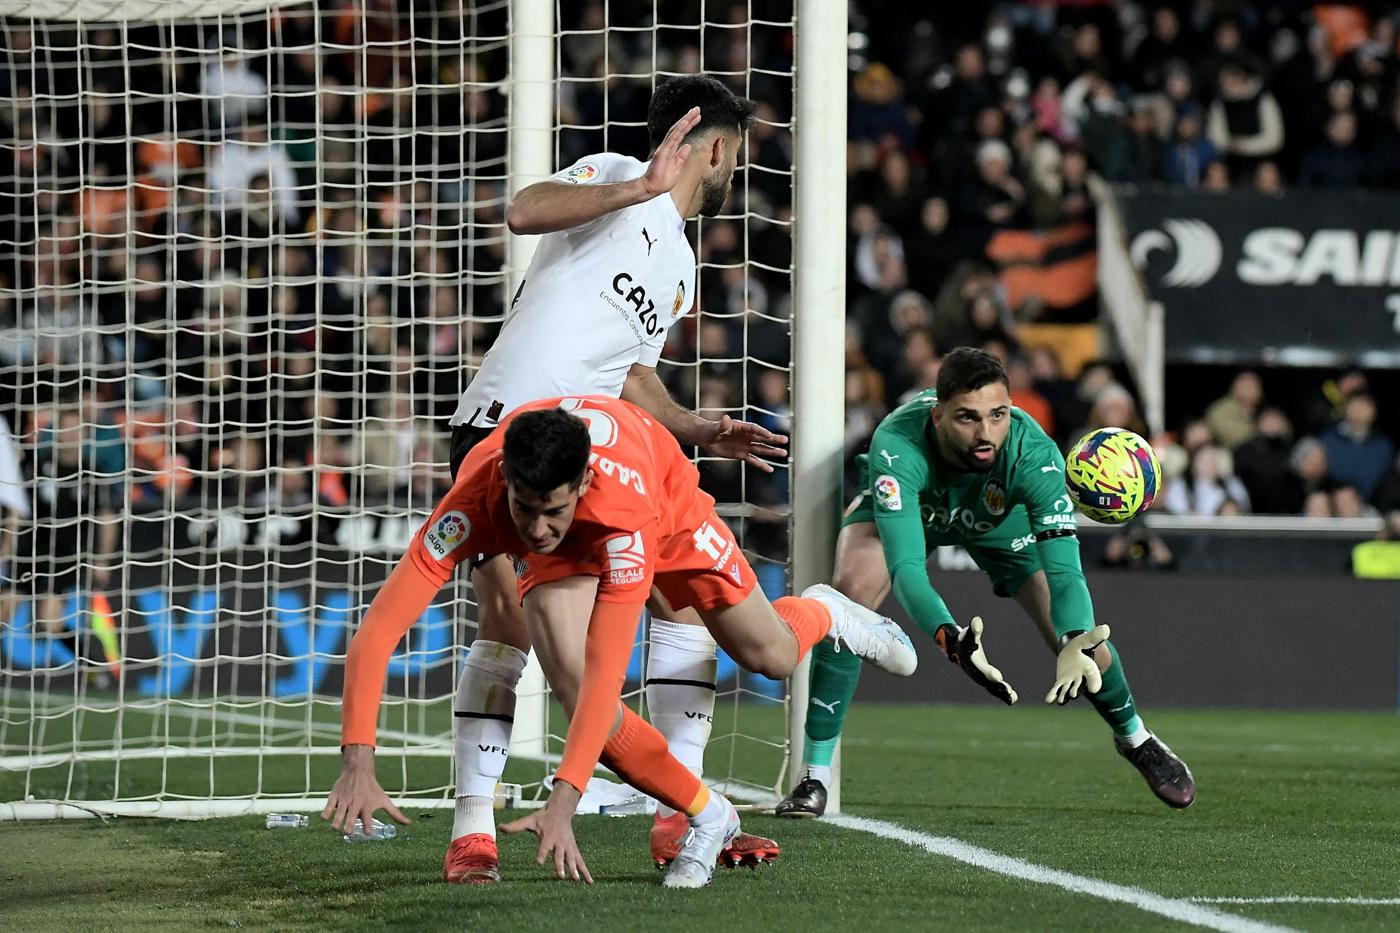 Valencia v Real S-Dad - 1-0. Liga hiszpańska, runda 23. Przegląd meczu, statystyki.